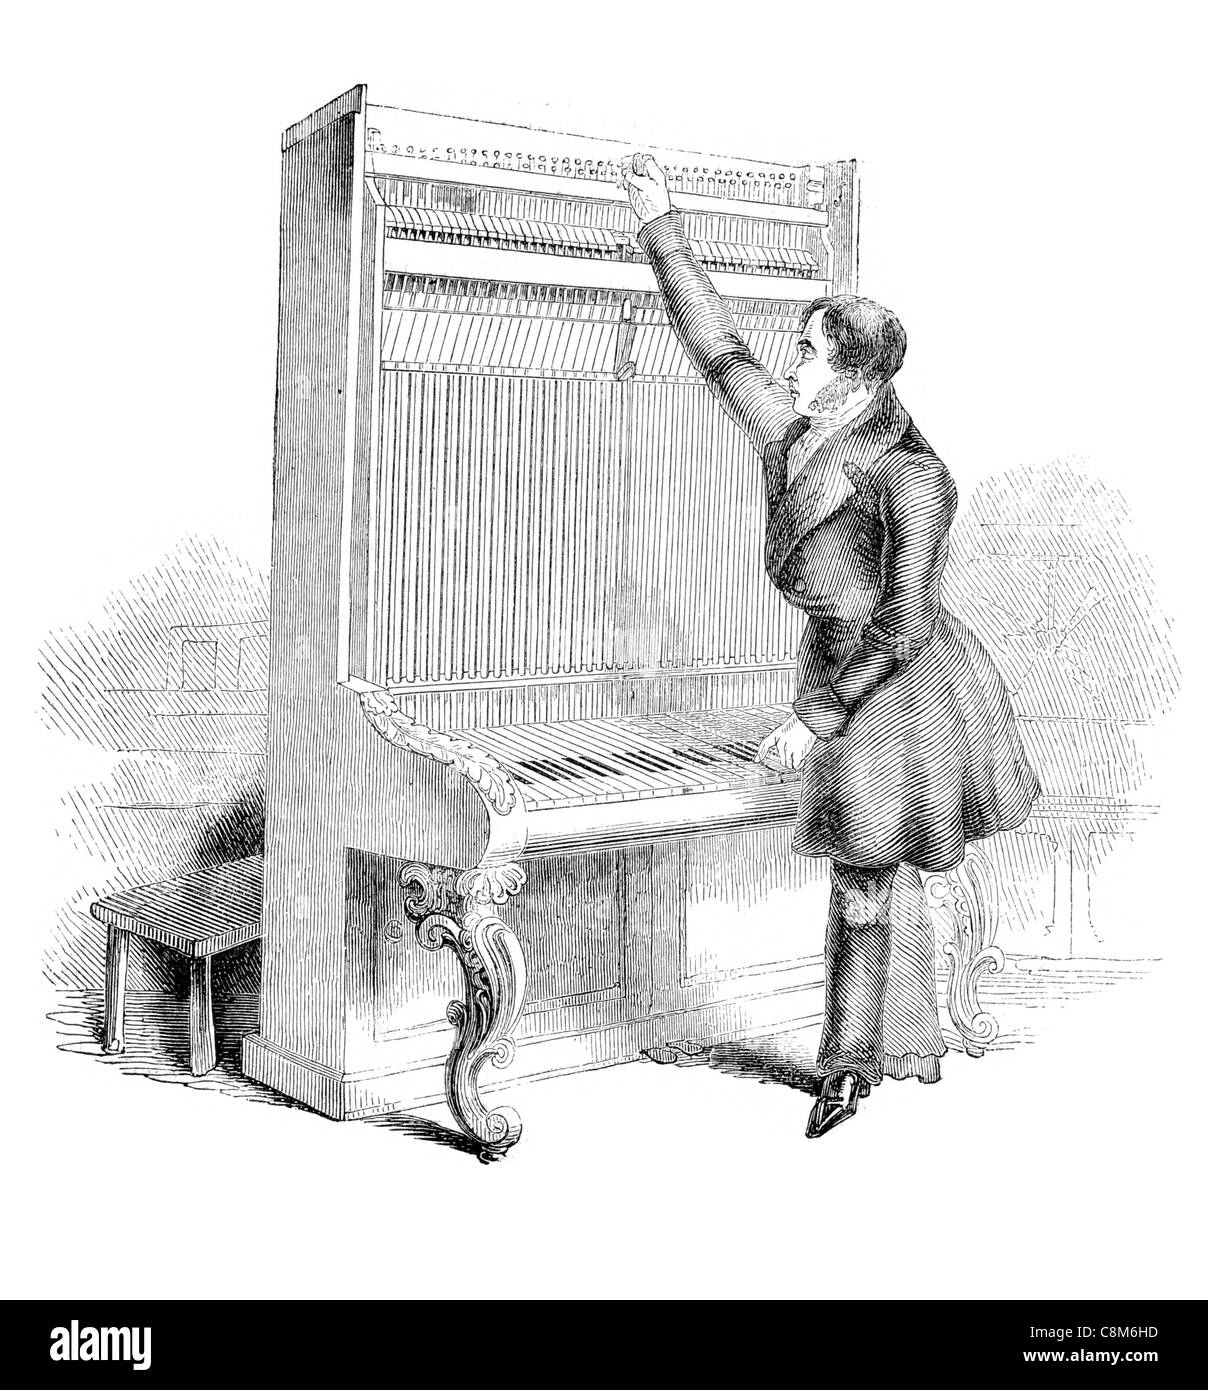 L'action ou de mécanisme interne d'un cabinet du piano piano pianoforte pianiste clavier forte d'instruments de musique musique de chambre un Banque D'Images